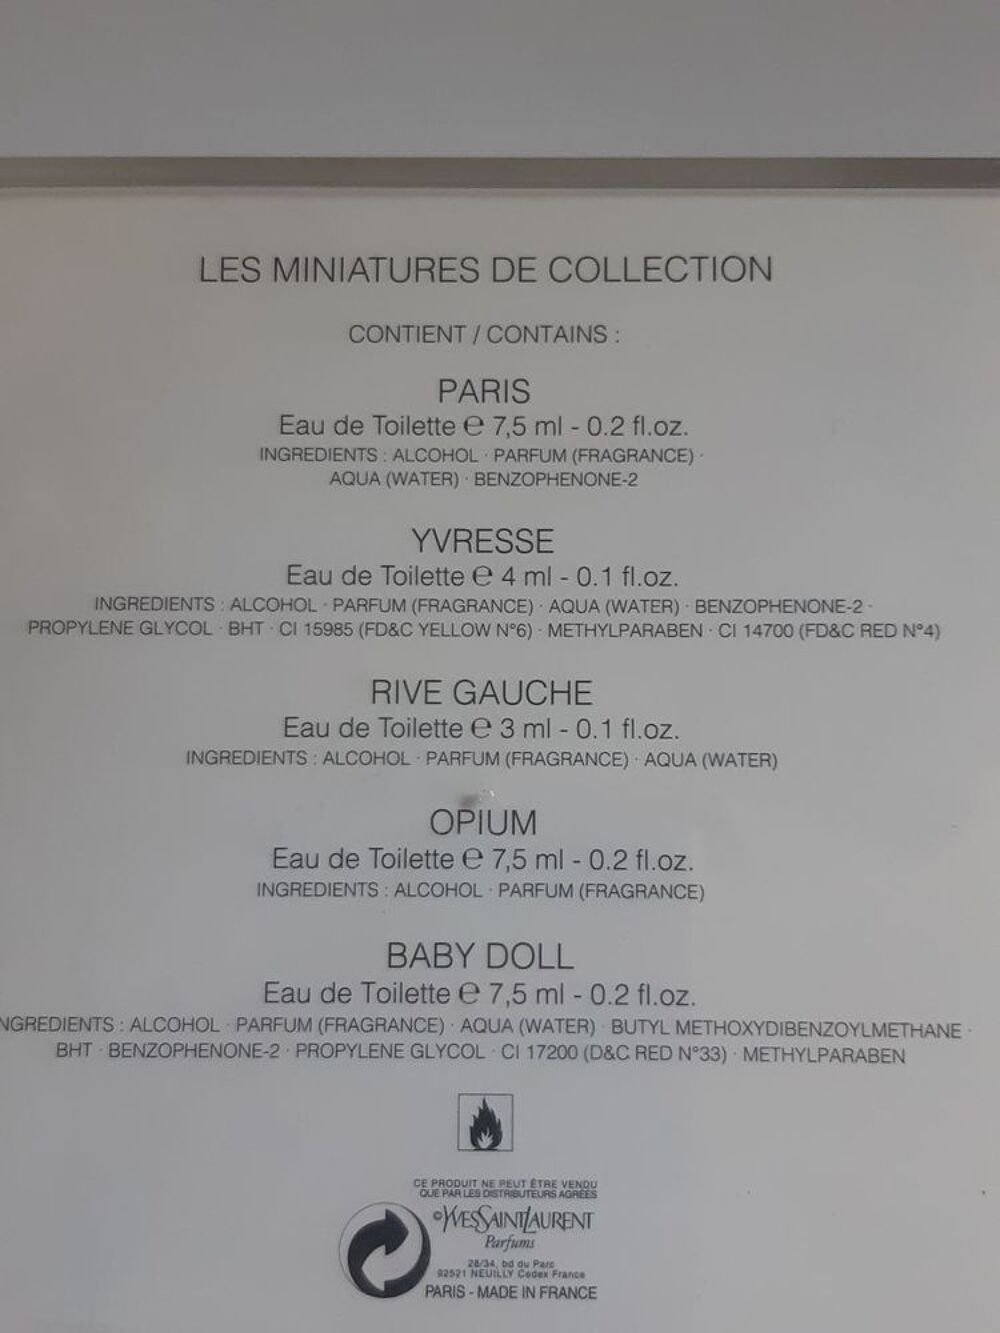 Miniatures de collection Yves Saint Laurent 